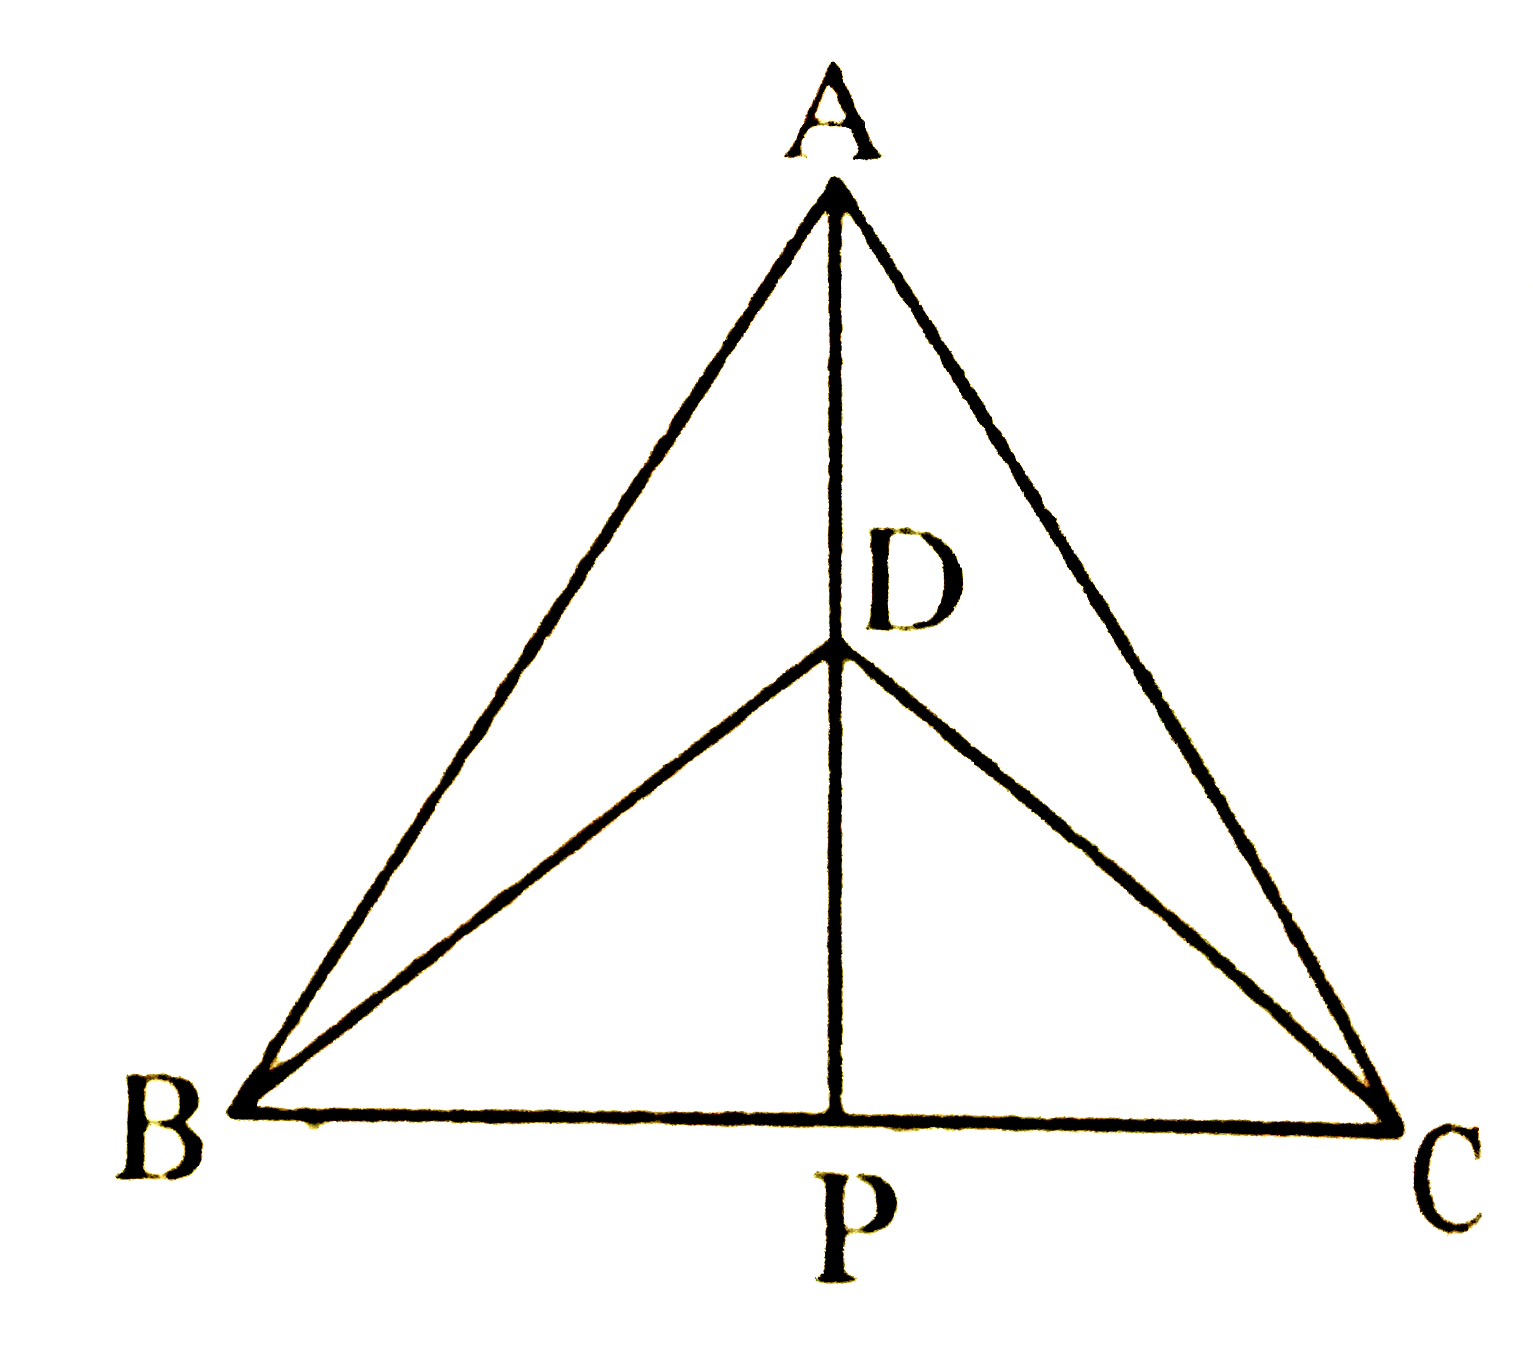 DeltaABC और DeltaDBC एक ही आधार BC पर बने दो समद्विबाहु त्रिभुज इस प्रकार हैं कि A और D भुजा BC के एक ही ओर स्थित हैं (देखिए चित्र) | यदि AD बढ़ाने पर BC को P पर प्रतिच्छेद करें, तो दर्शाइए कि      AP रेखाखंड BC का लम्ब समद्विभाजक है |